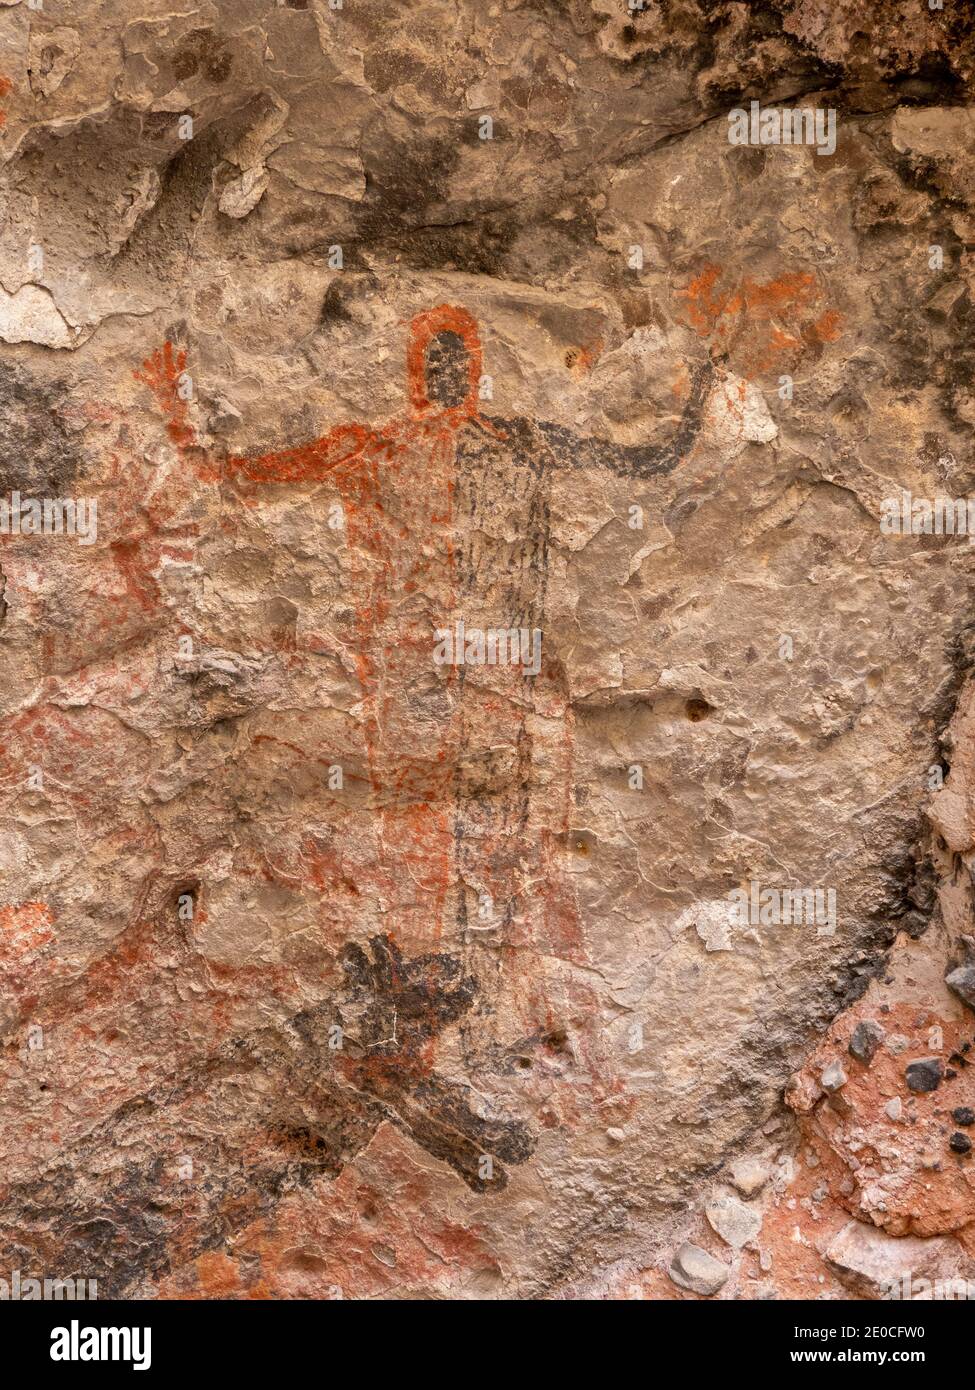 Pictogramas de arte rupestre del pueblo Cochimi, Cueva del Raton, Patrimonio de la Humanidad de la UNESCO, Sierra de San Francisco, Baja California Sur, México Foto de stock